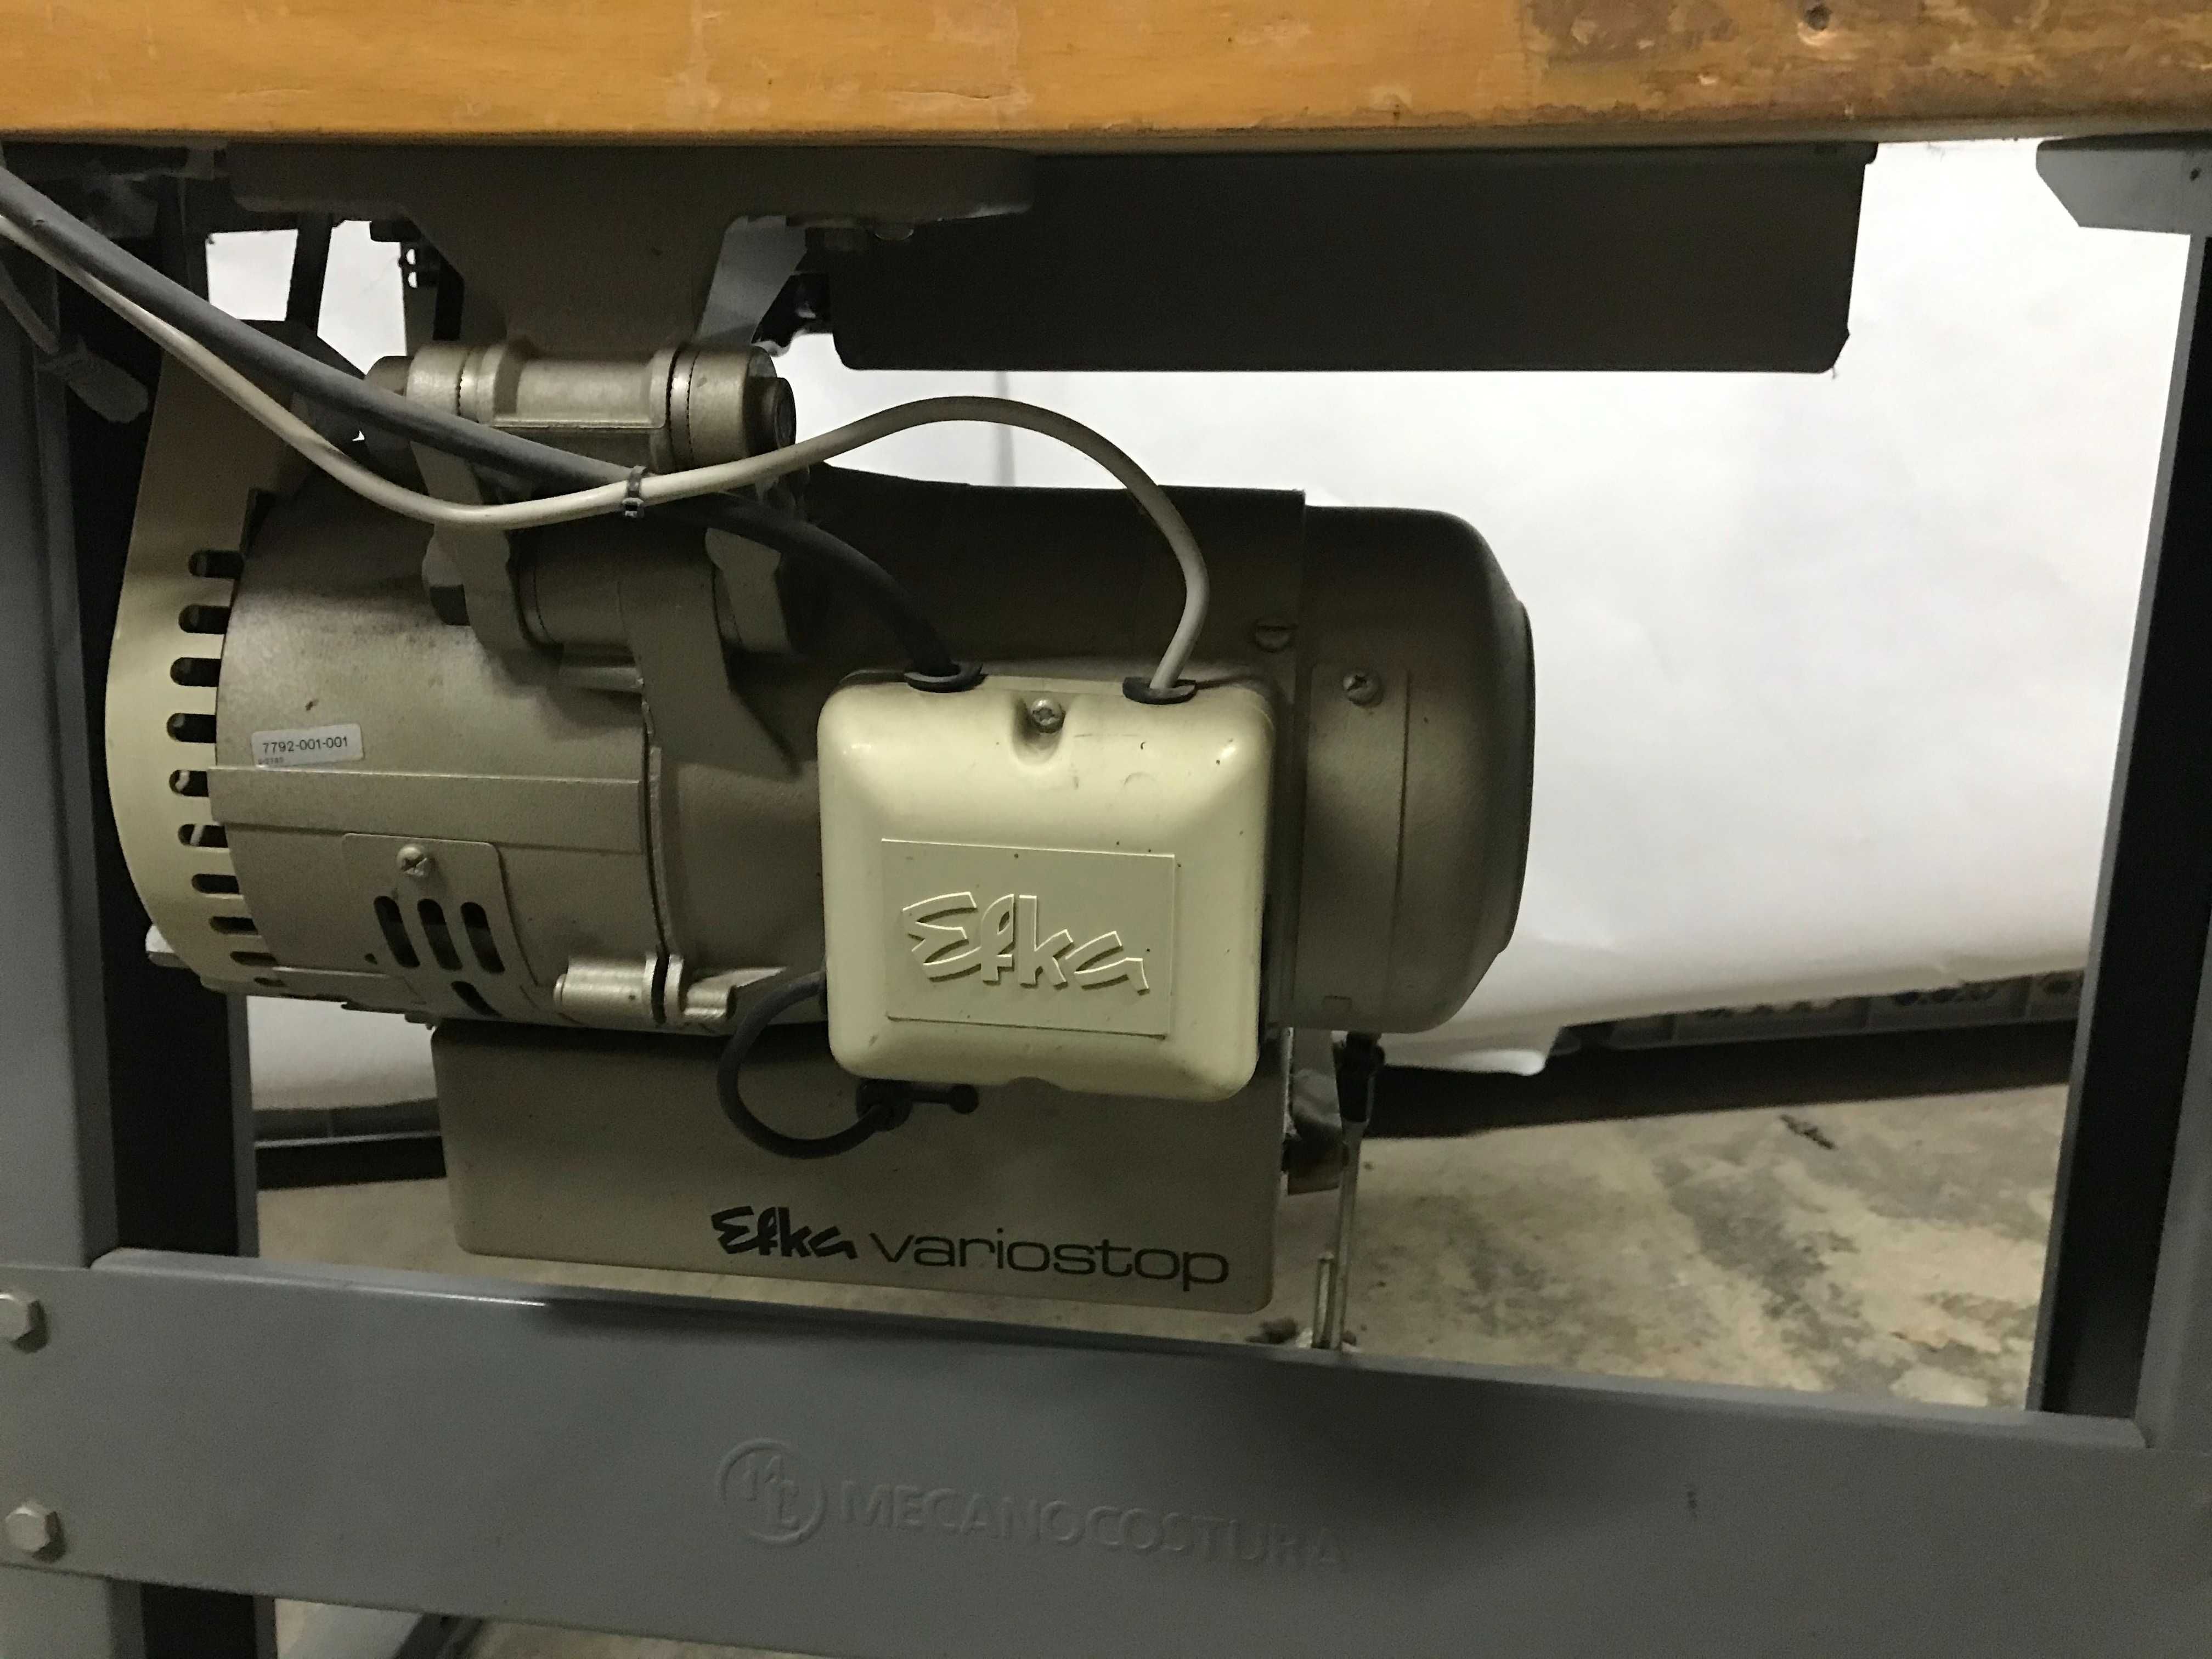 Maquina Costura Industrial DURKOPP 272  C/ Efka Variocontrol 62